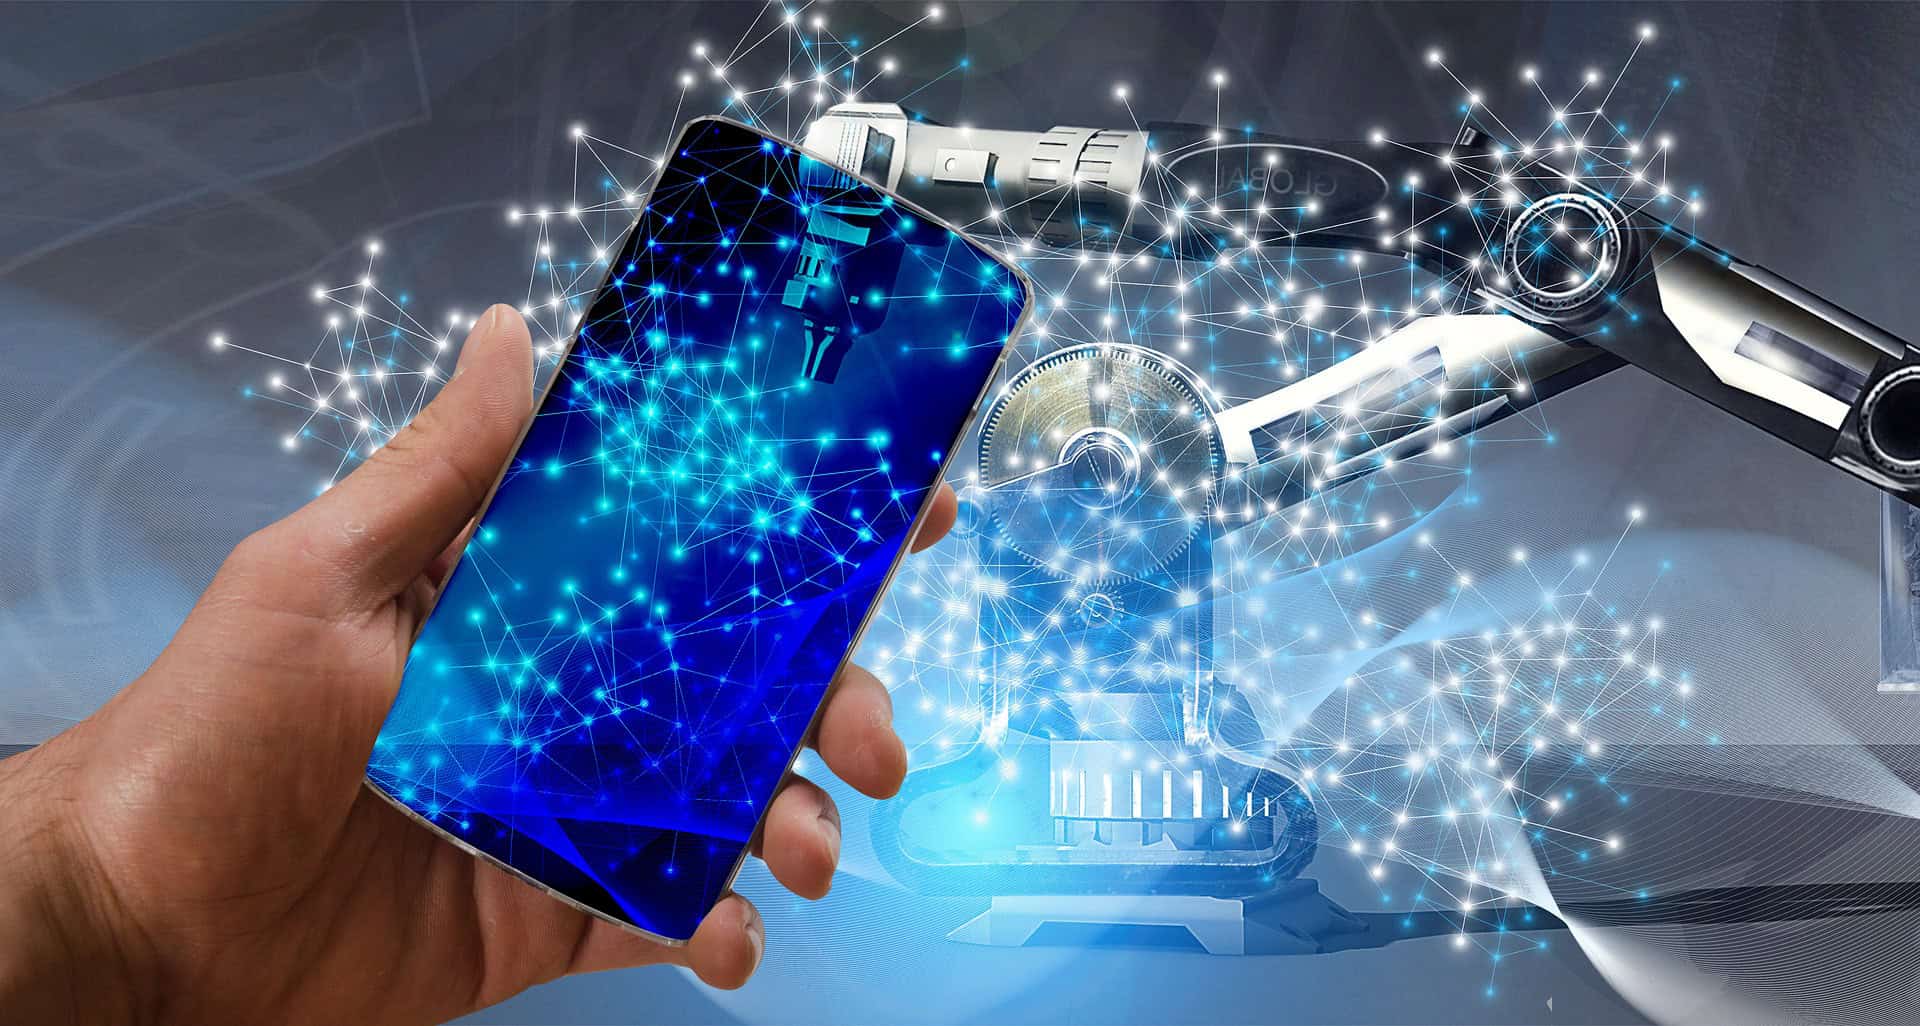 تتوقع هواوي أن تستحوذ الهواتف الذكية المدعمة بالذكاء الاصطناعي على 90% من السوق بحلول عام 2030